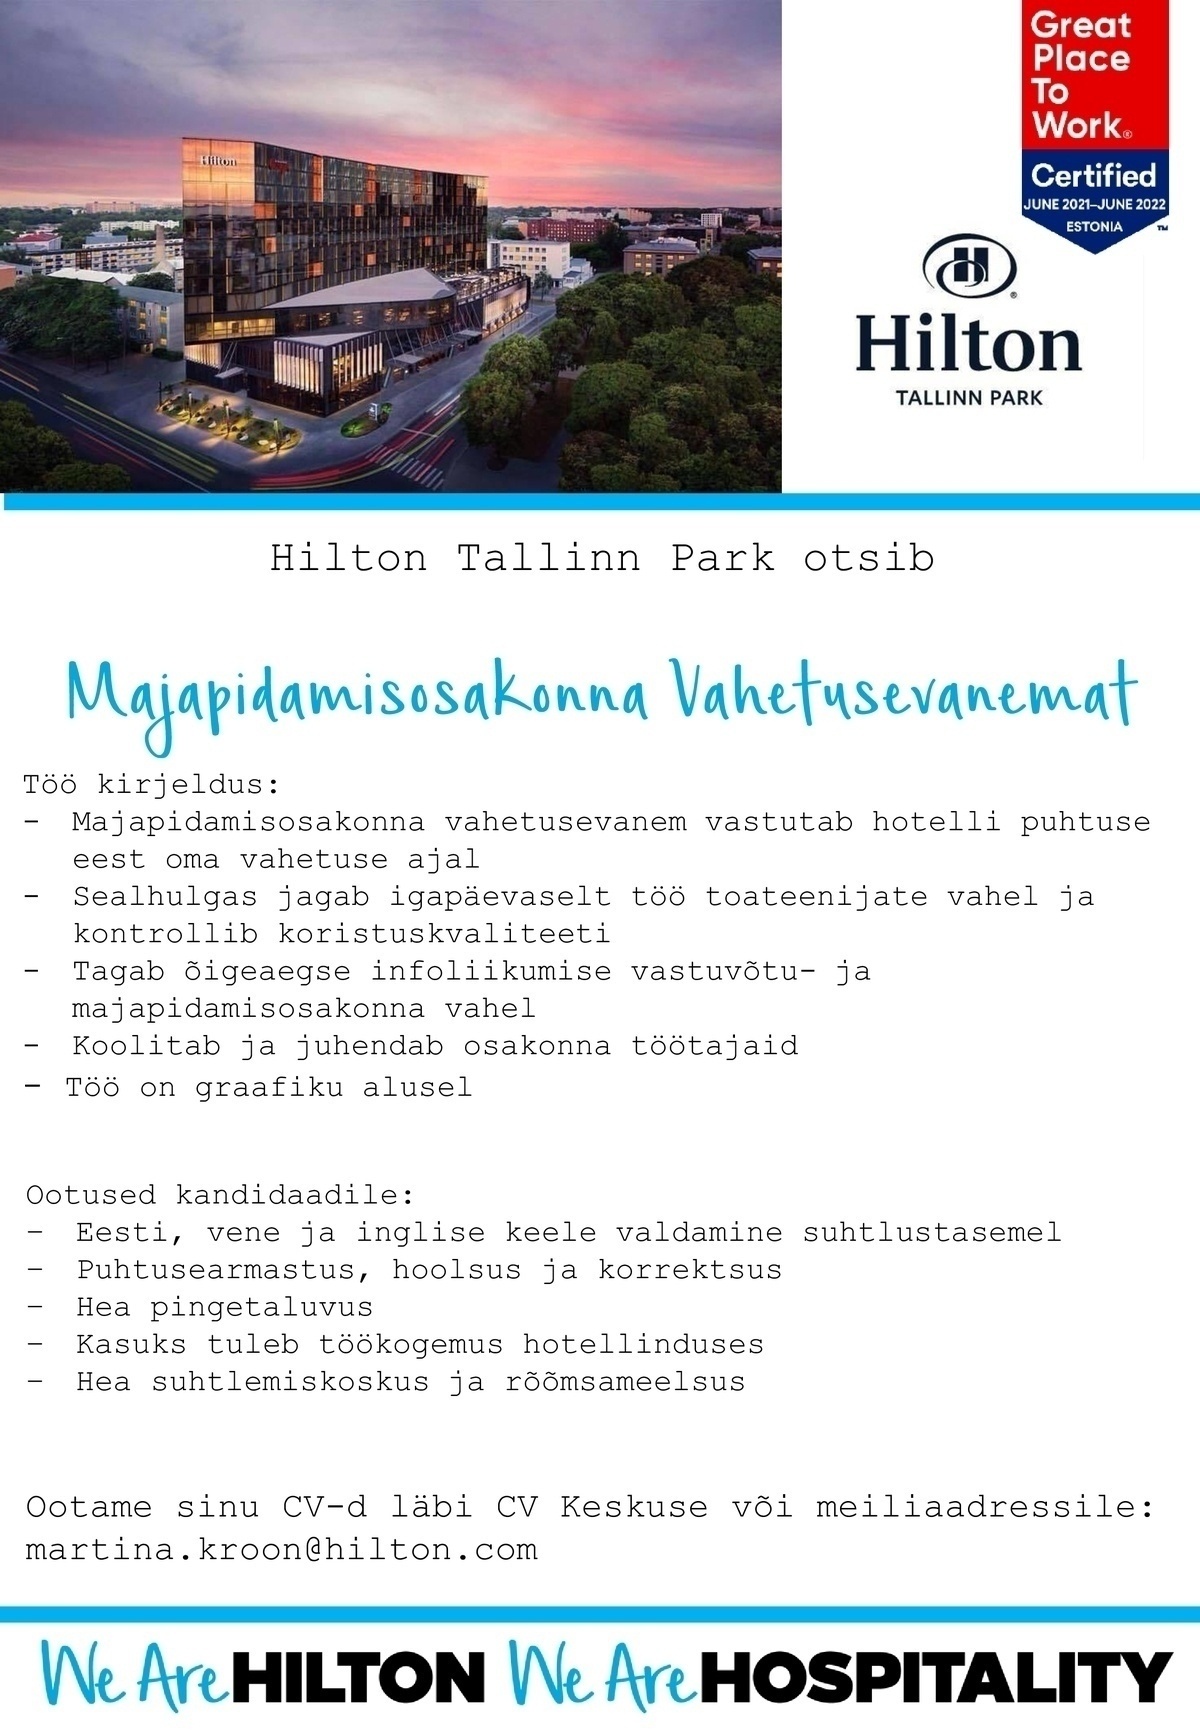 Hilton Tallinn Park Majapidamisosakonna Vahetusevanem